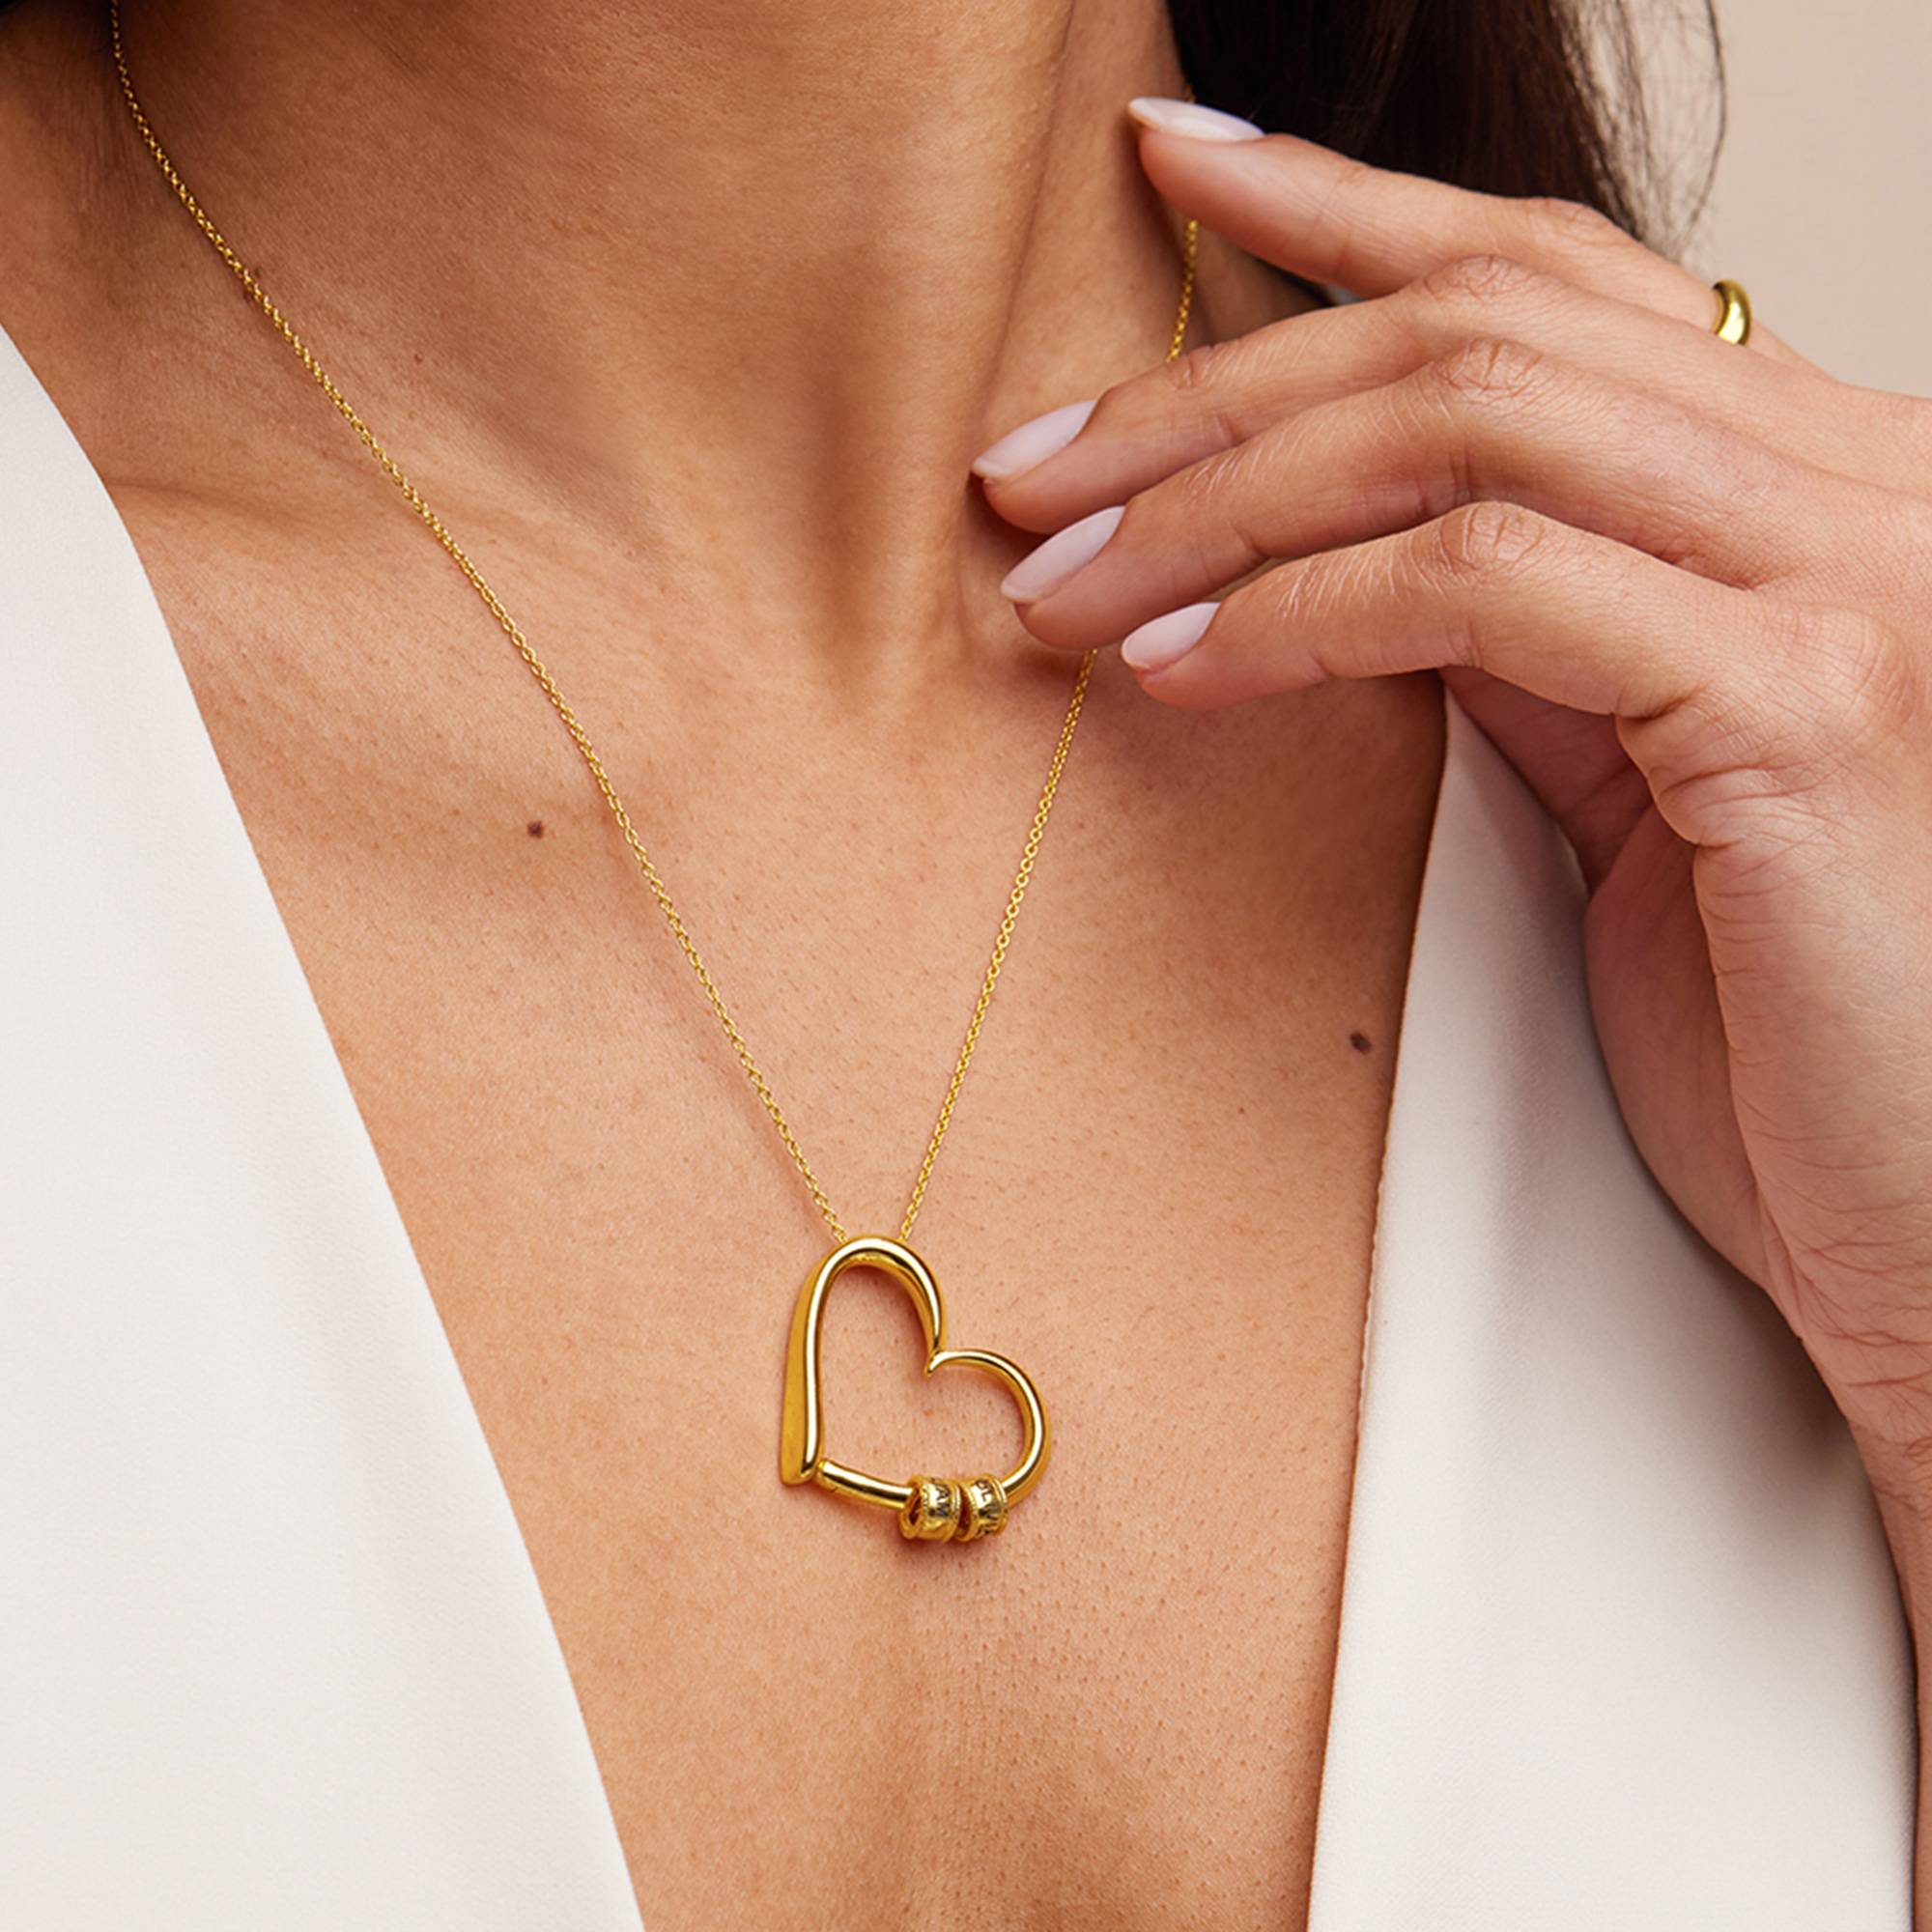 Collar "Charming Heart" con Perlas Grabadas Chapado en Oro 18K-6 foto de producto